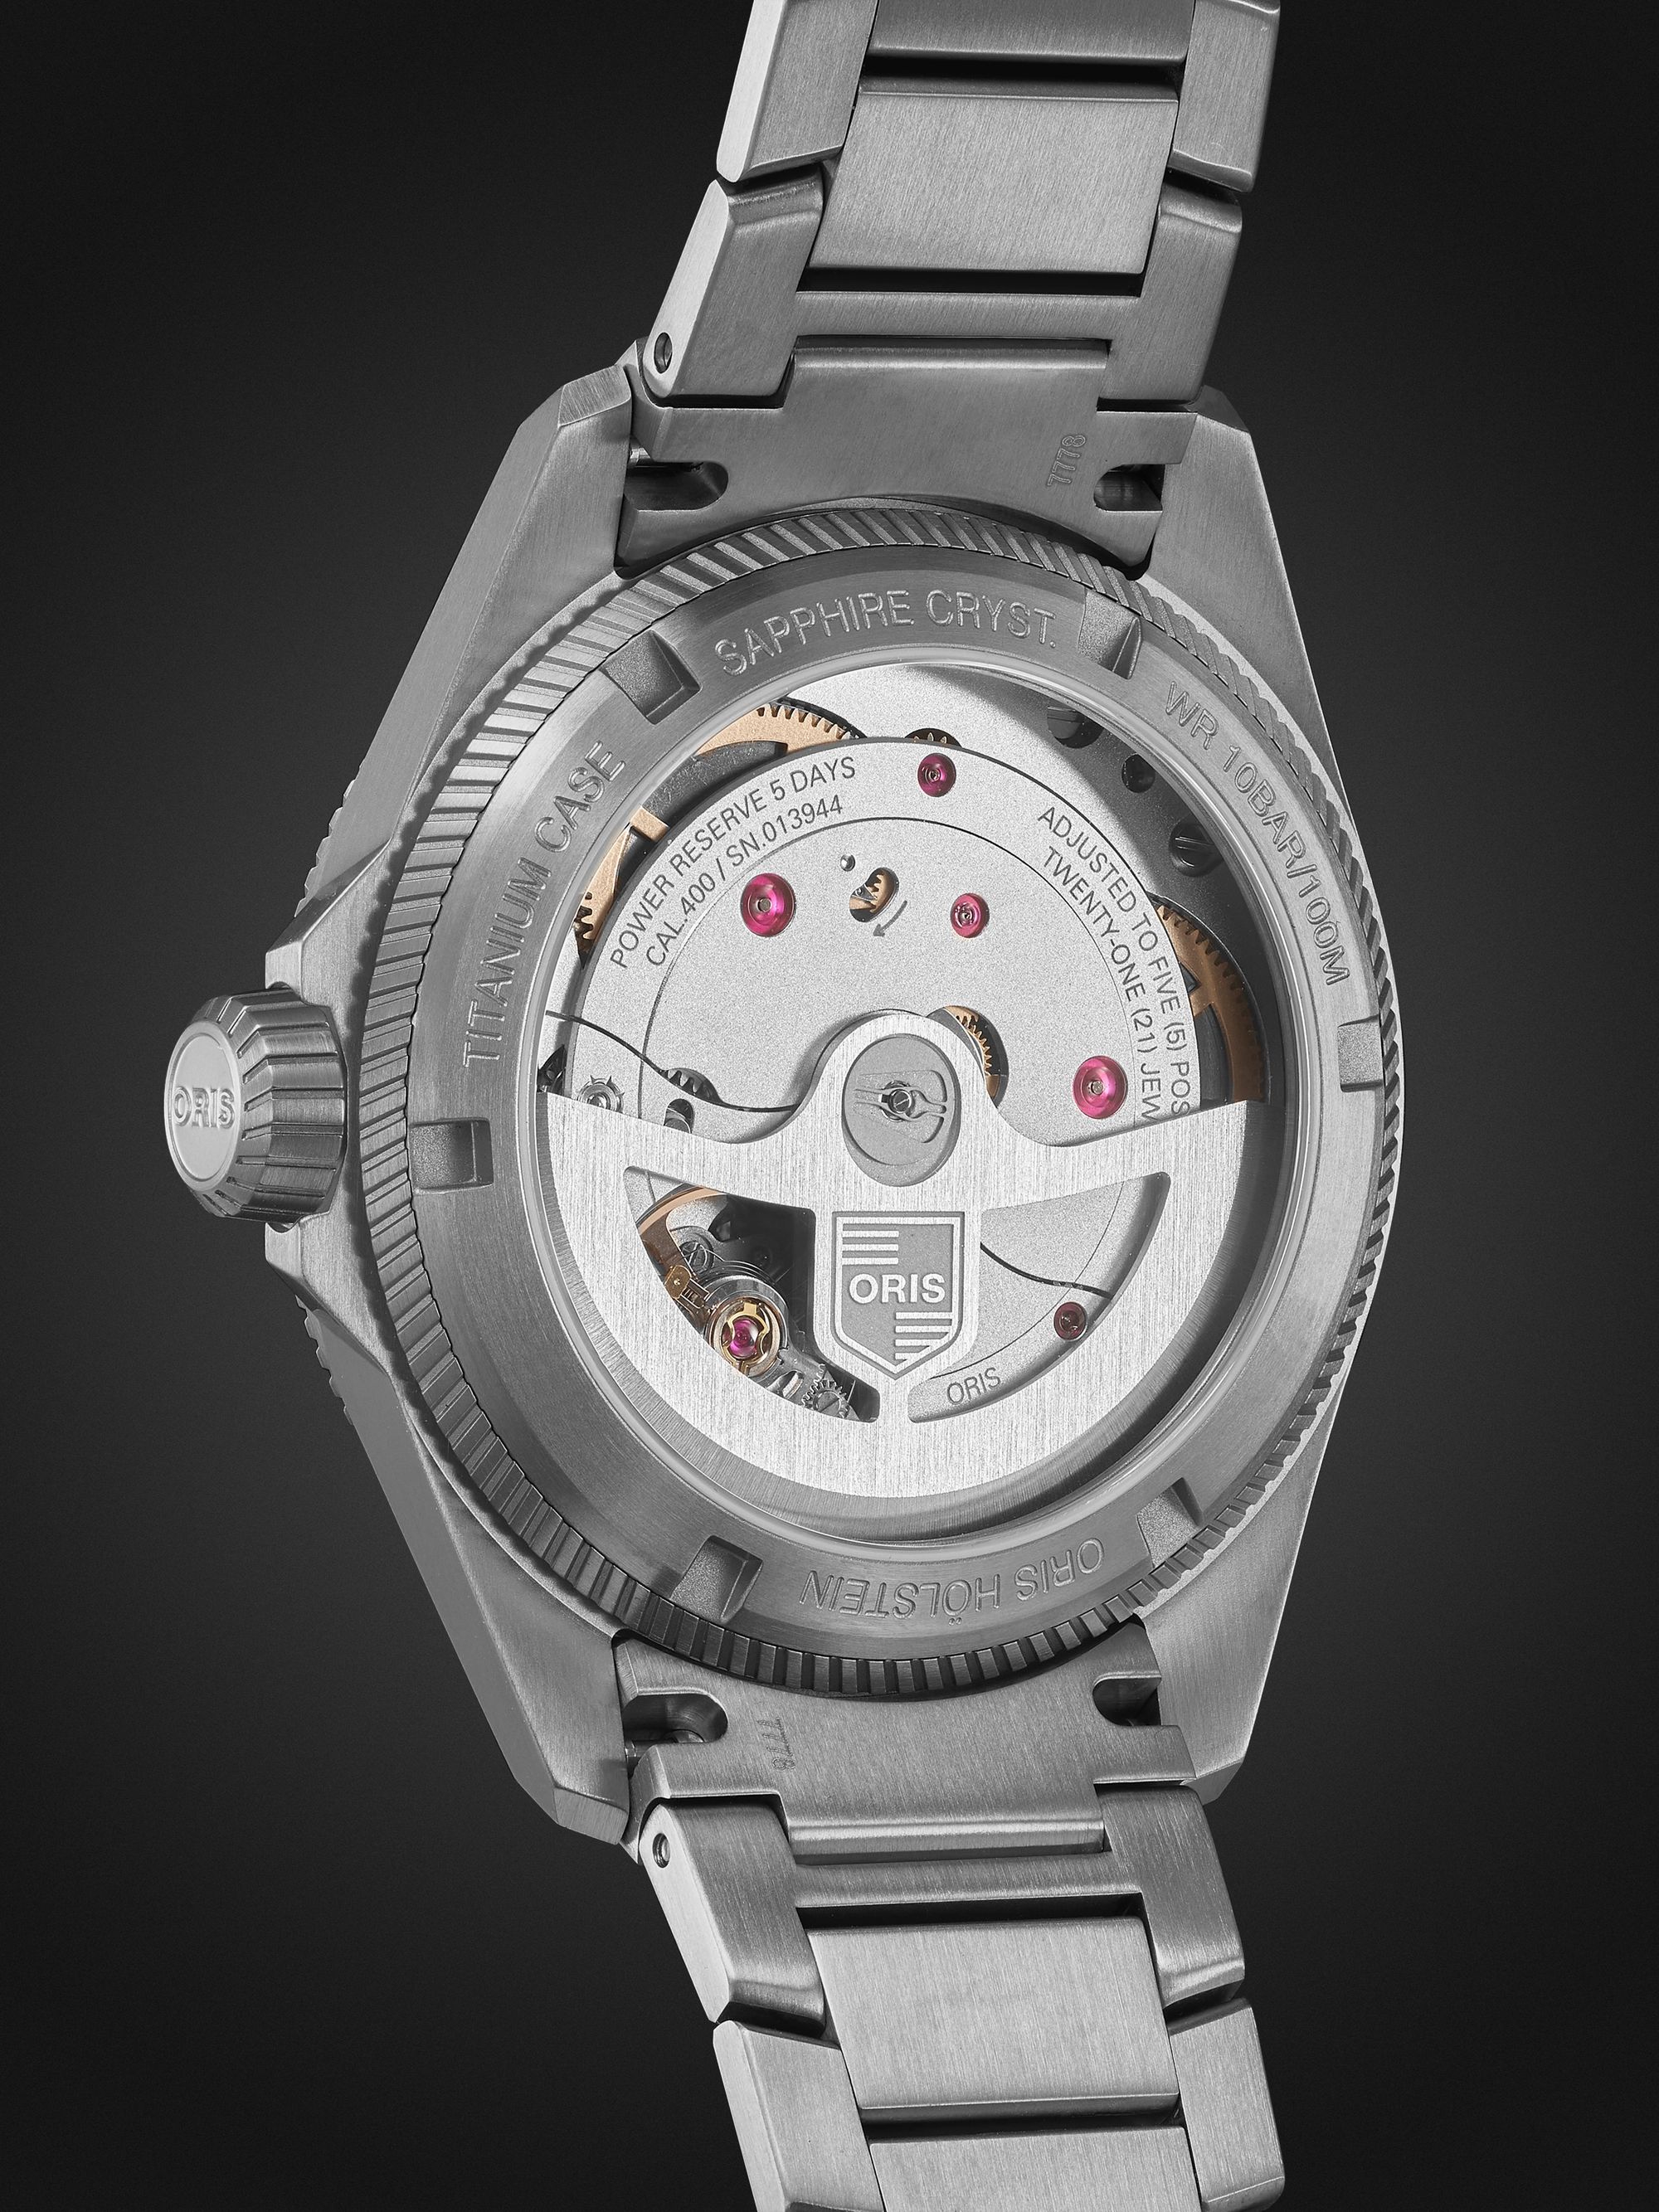 ORIS Pro Pilot PPX Automatic 39mm Titanium Watch, Ref. No. 01 400 7778 7155-07 7 20 01TLC